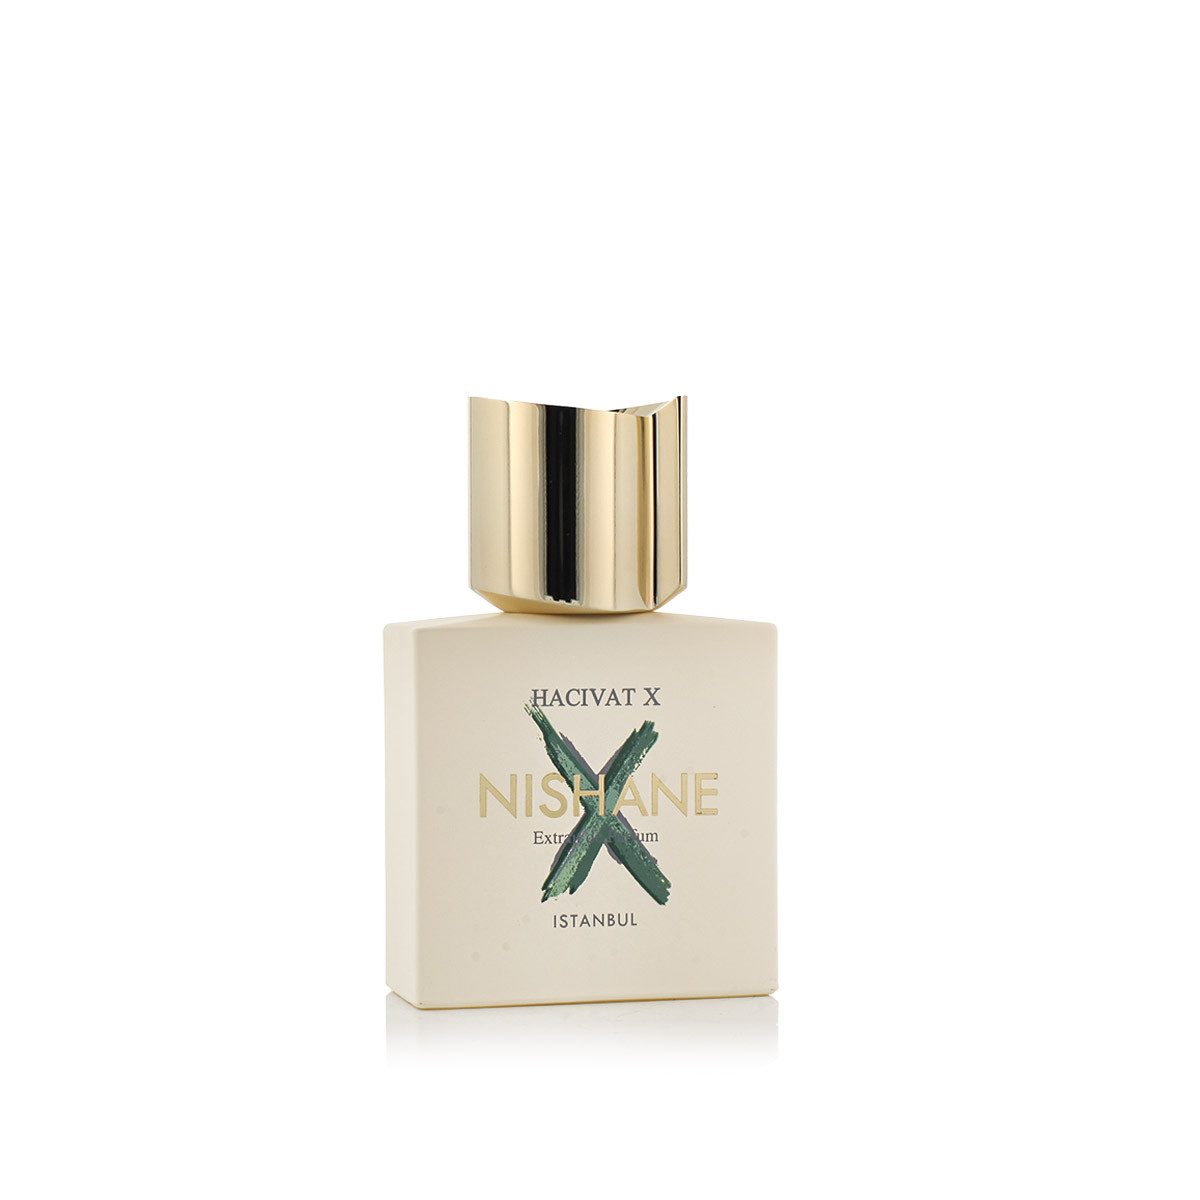 Nishane Extrait Parfum Hacivat X